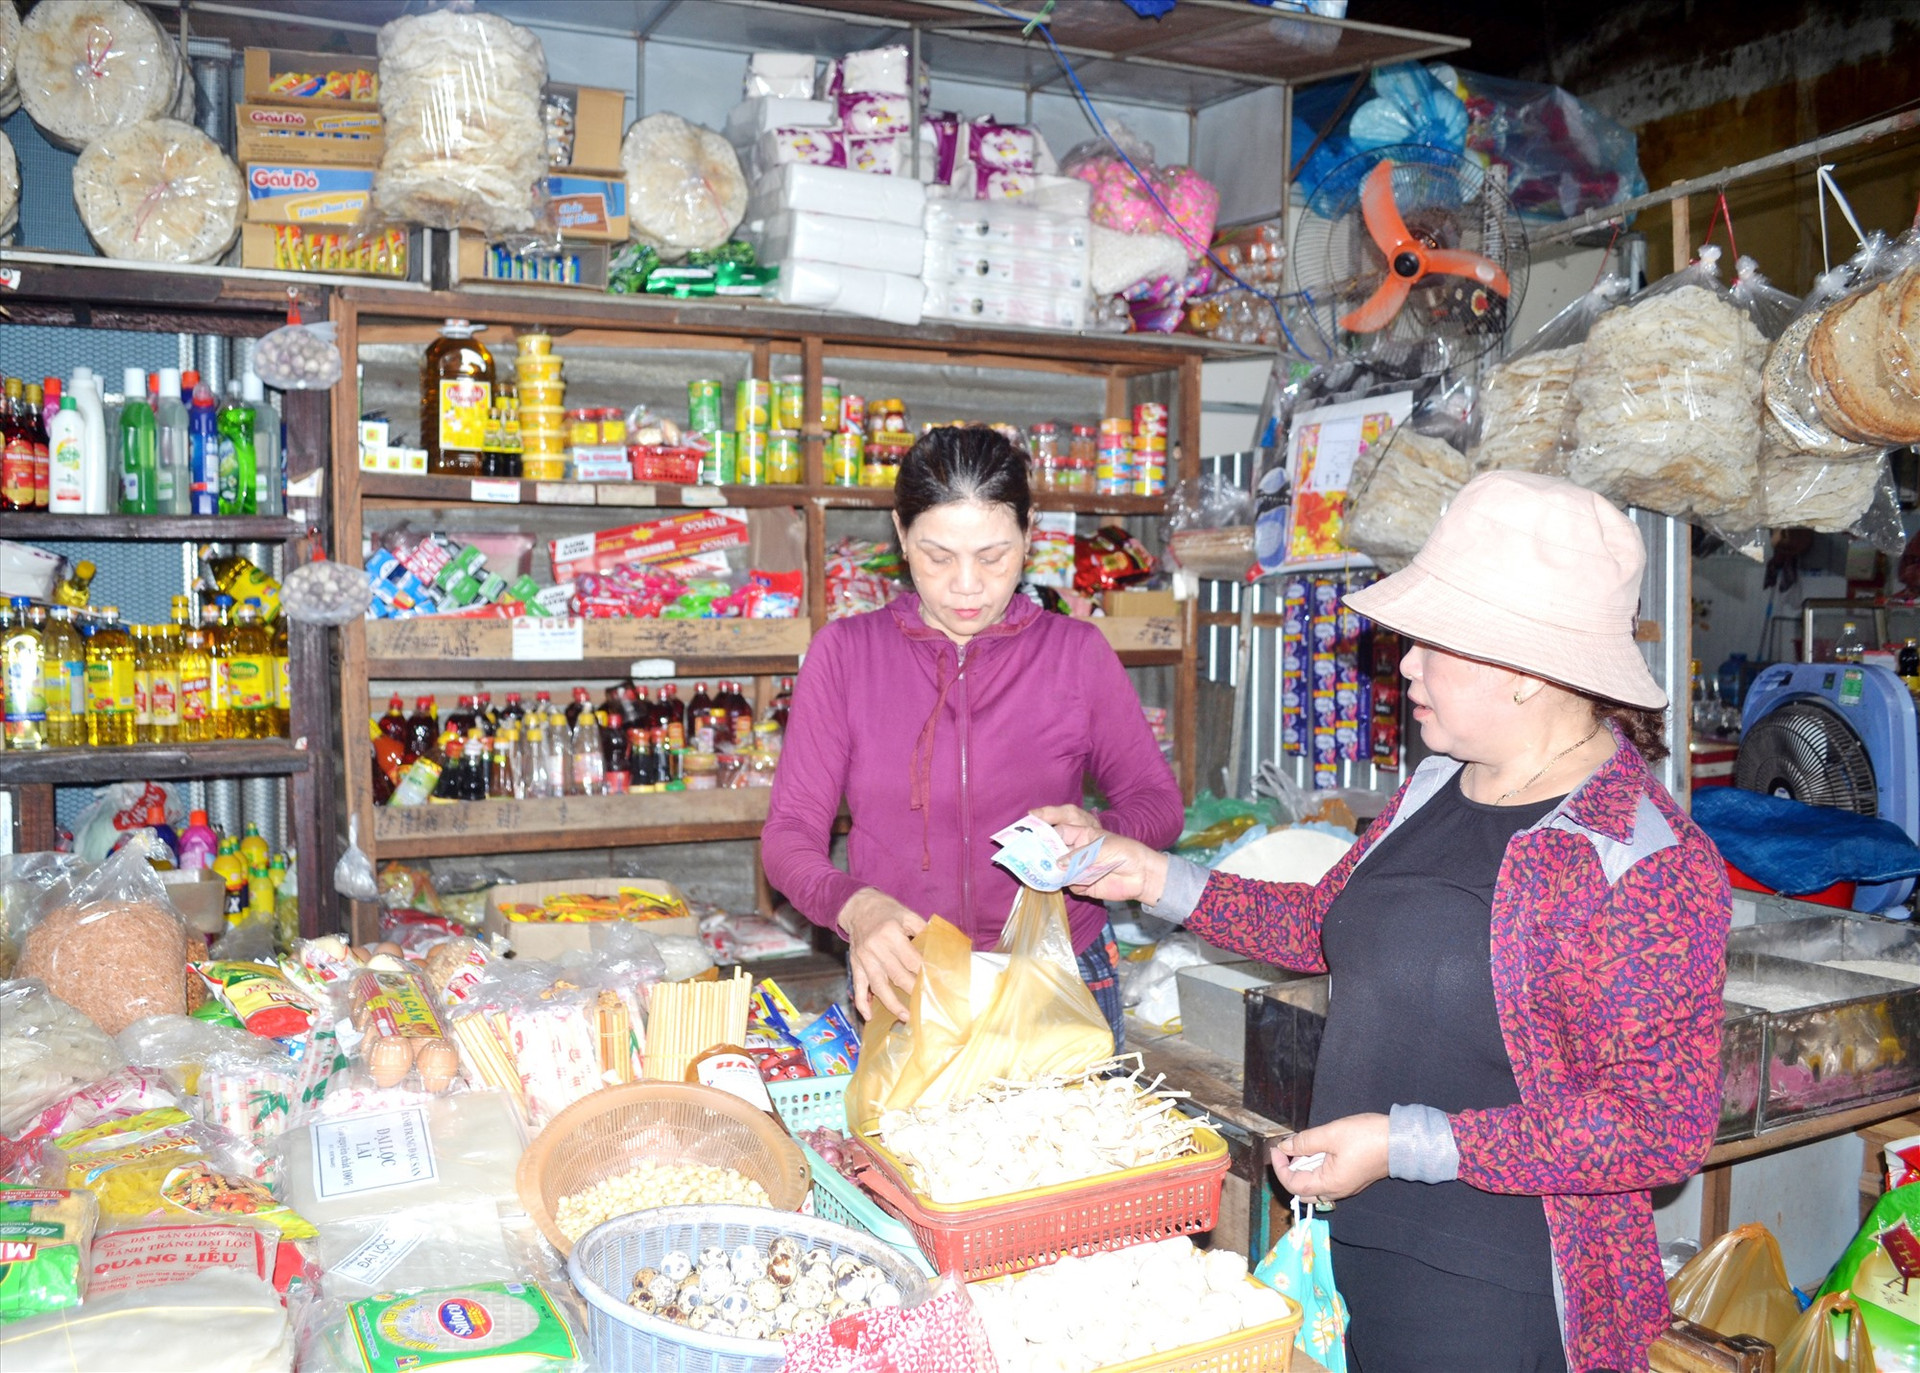 Hoạt động ở chợ truyền thống giữ vai trò quan trọng trong phát triển kinh tế - xã hội Quảng Nam. Ảnh: NGUYỄN QUANG